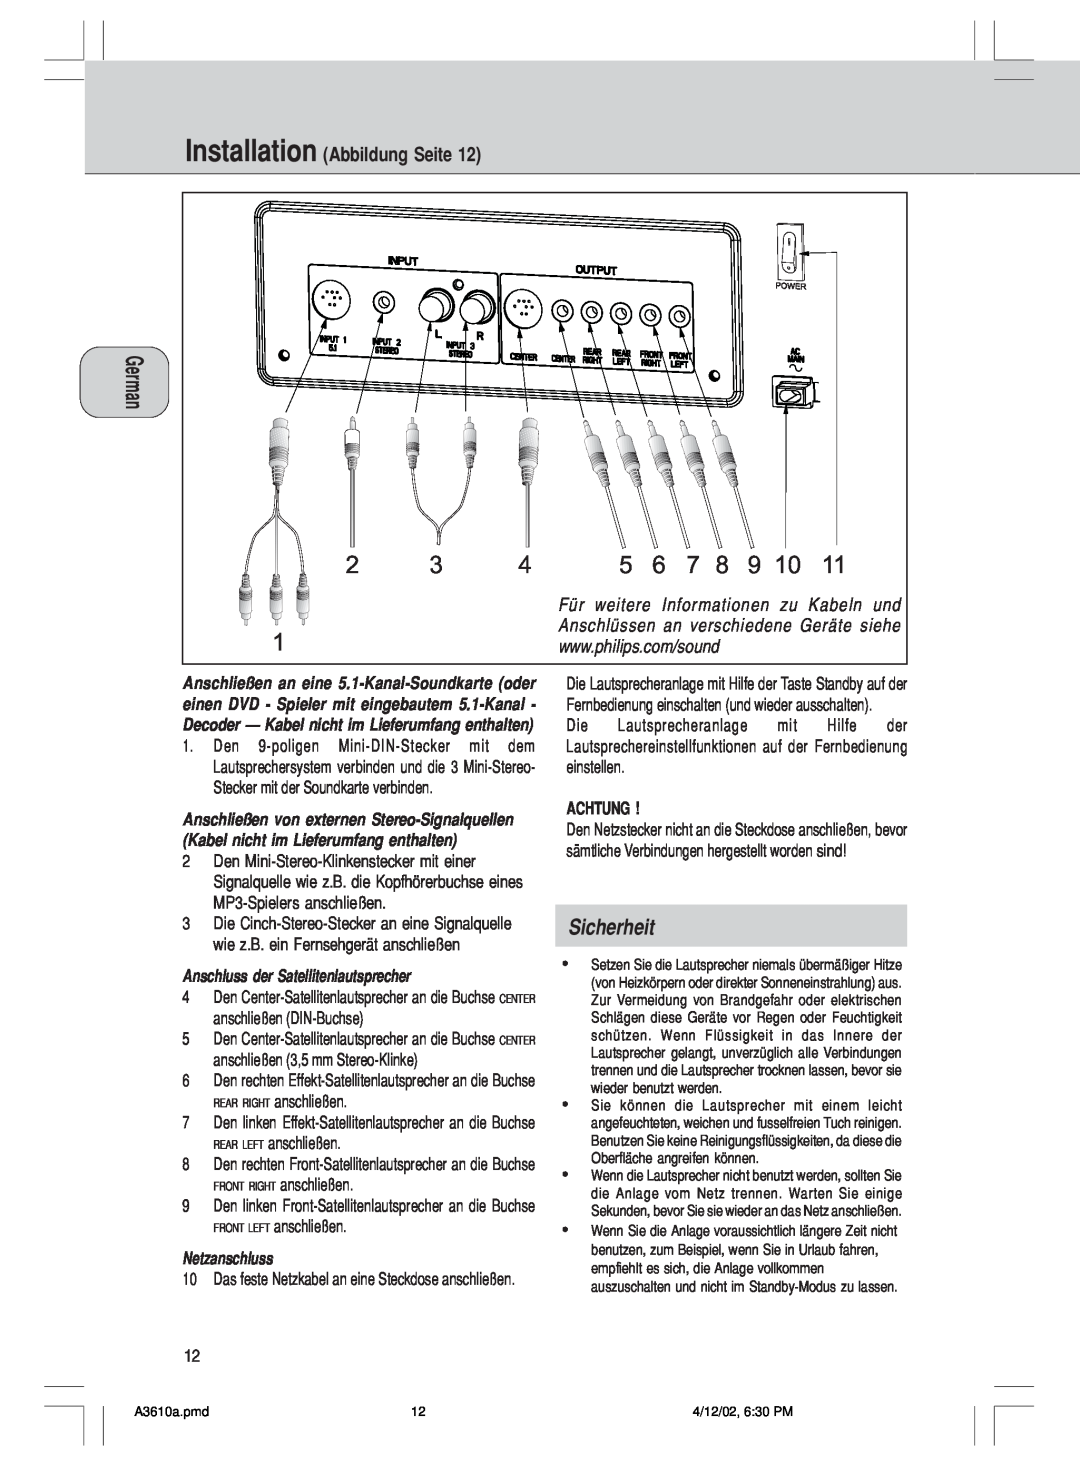 Philips A3.610, MMS316 manual Sicherheit, Installation Abbildung Seite 